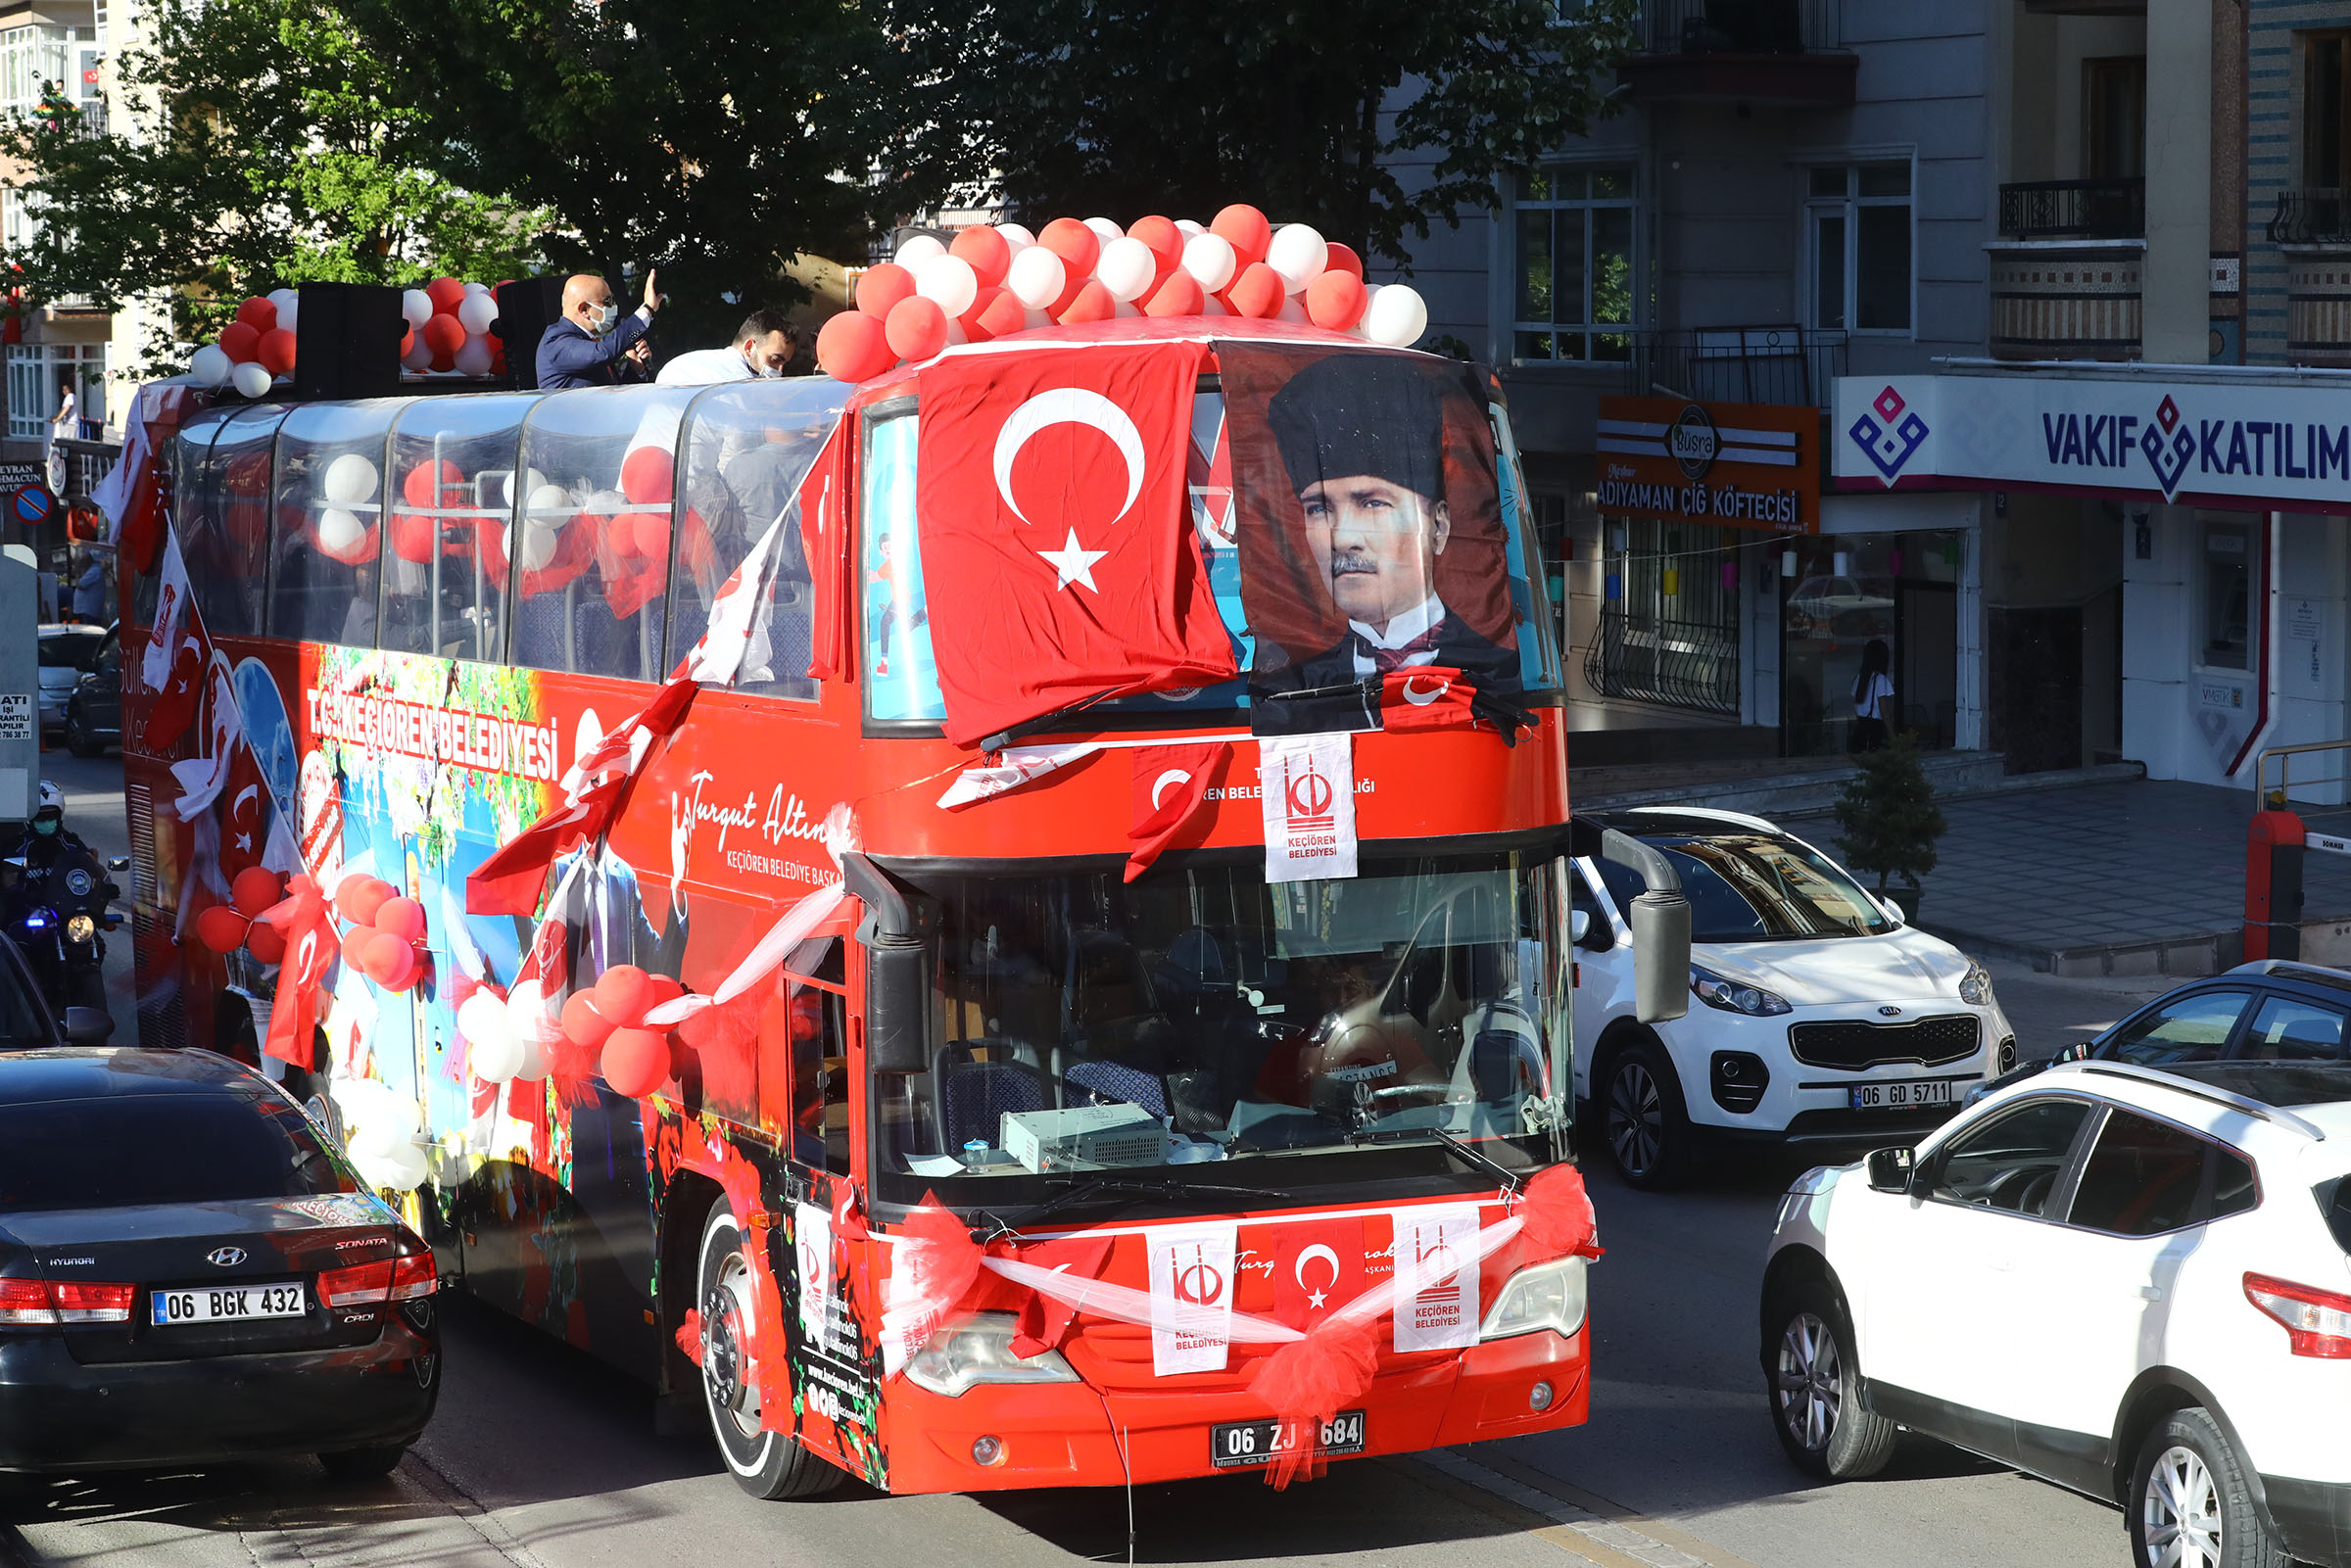  Keçiören’de Üstü Açık Otobüs ile 19 Mayıs Coşkusu Sokaklara Taşındı